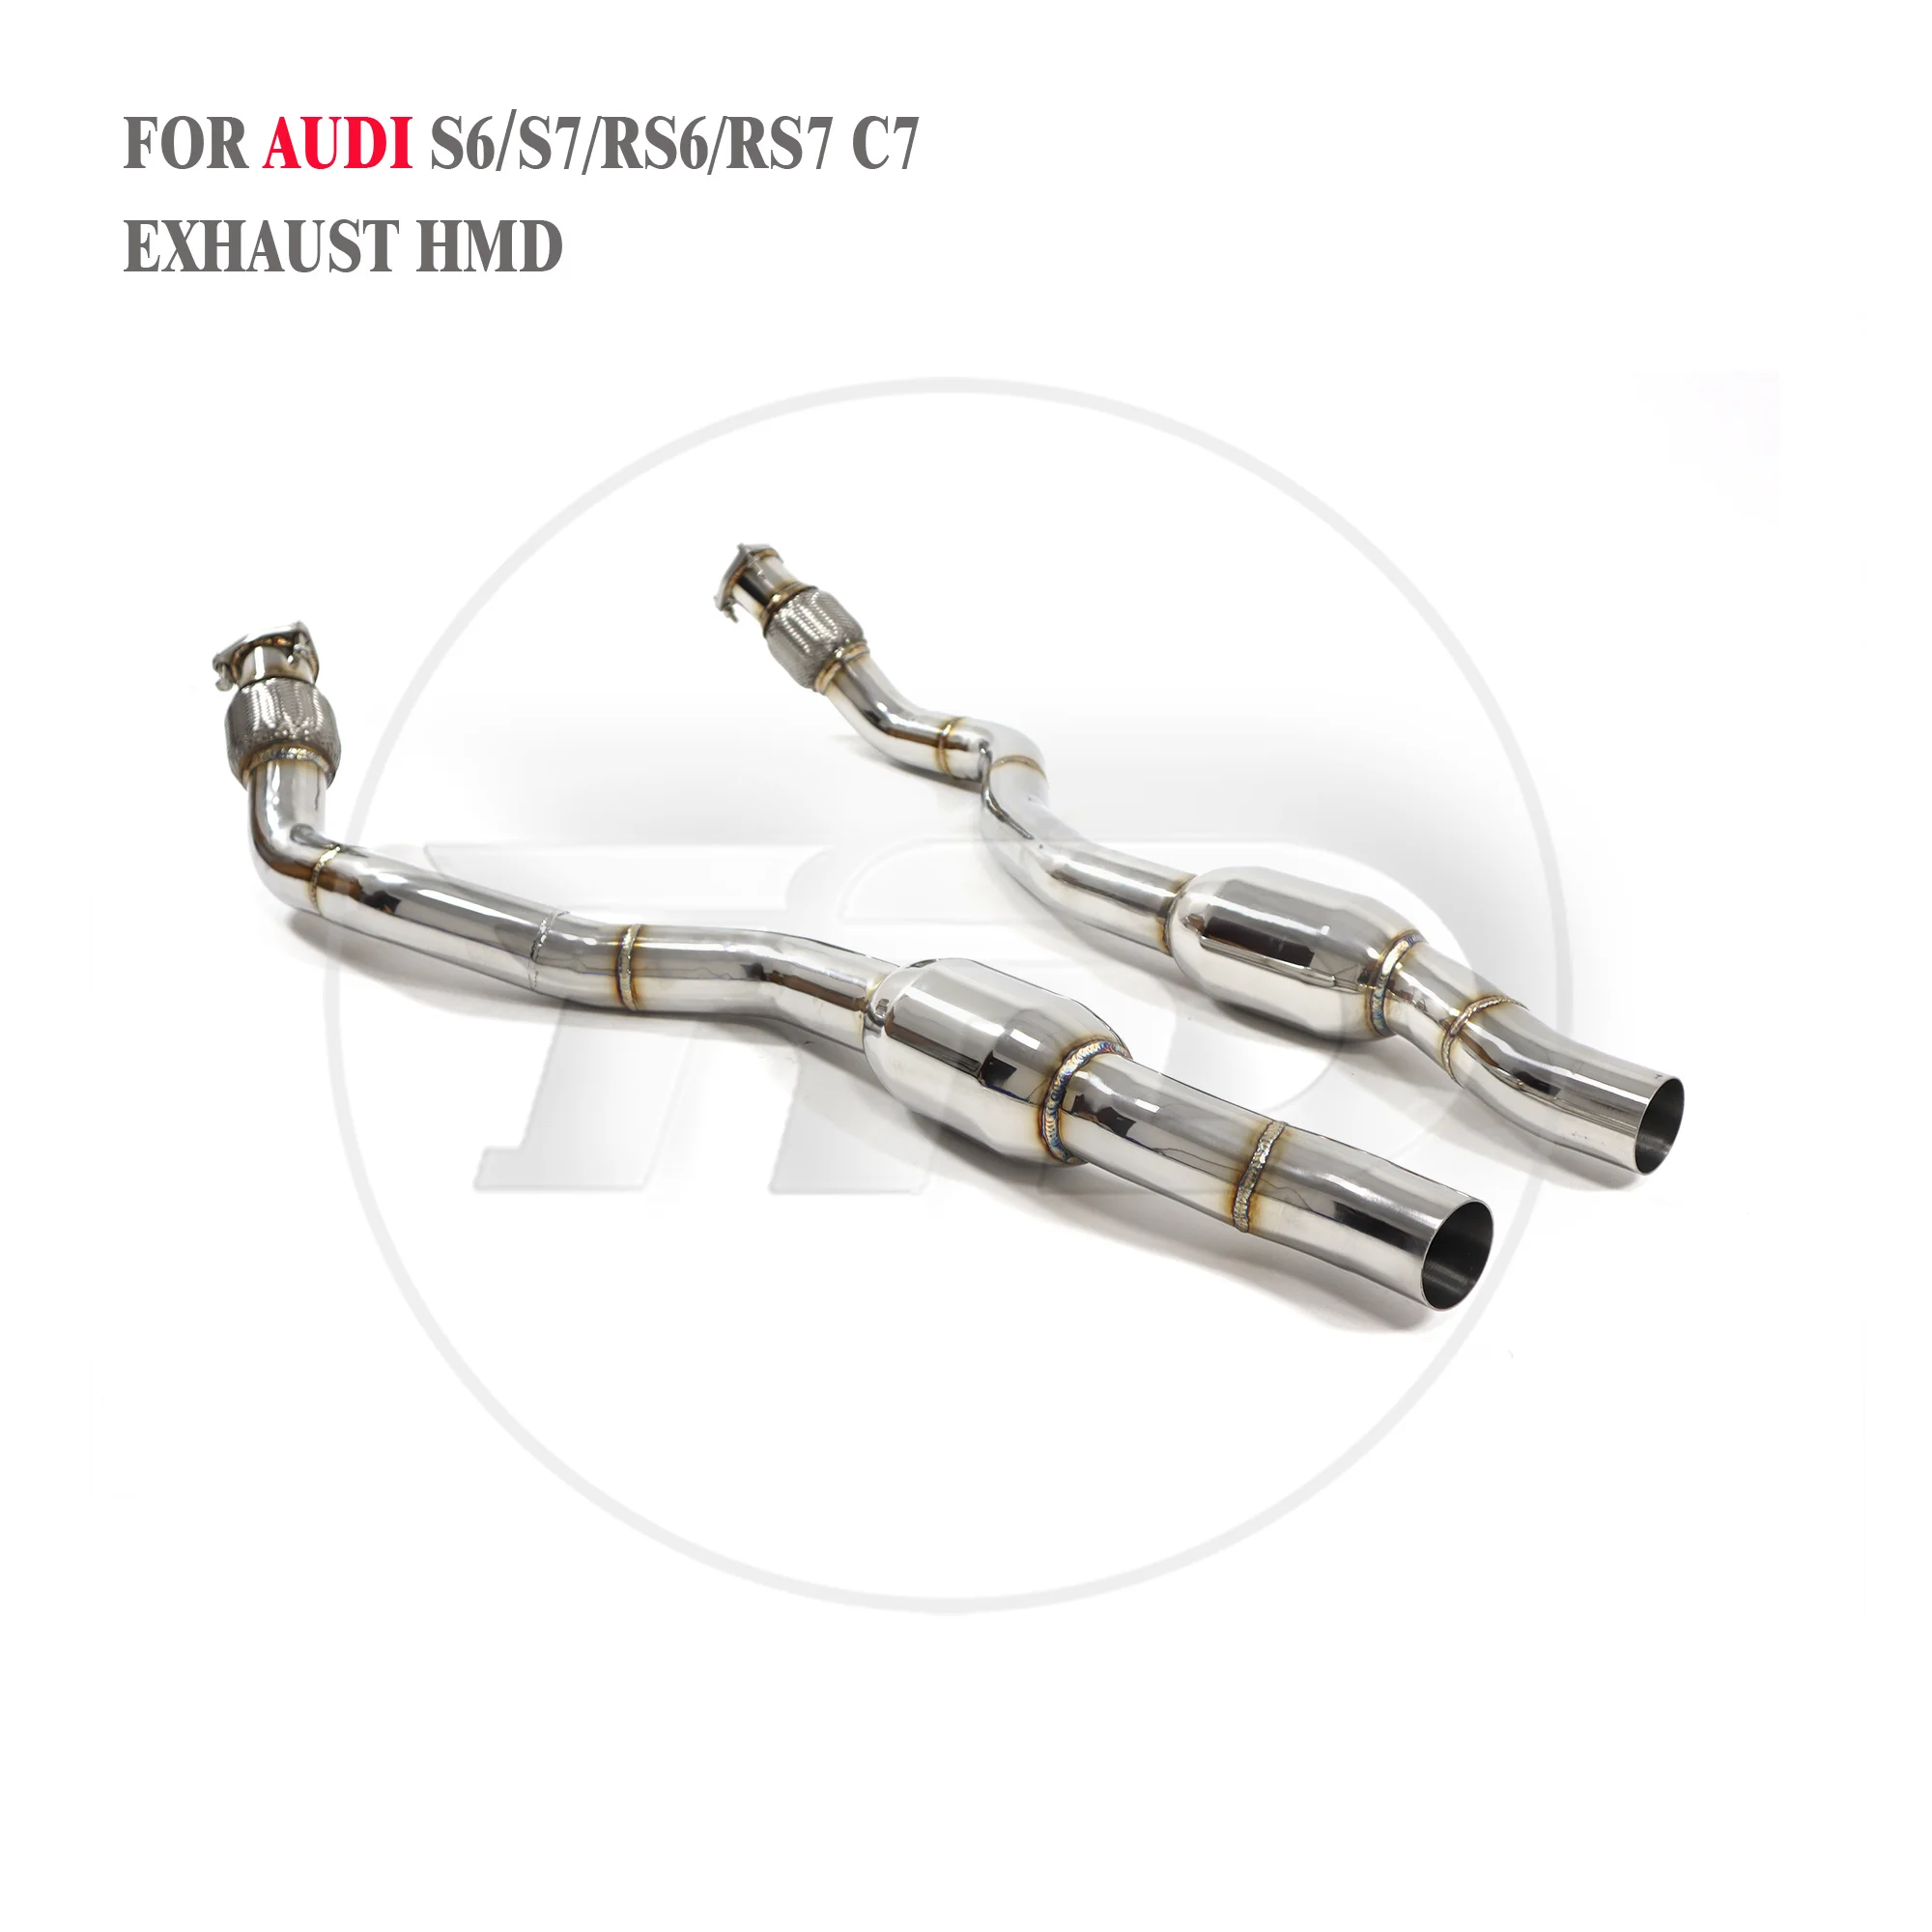 Вторая труба выхлопной системы HMD для Audi S6 S7 RS6 RS7 C7 4,0T 2013-2018 Передняя труба с резонатором